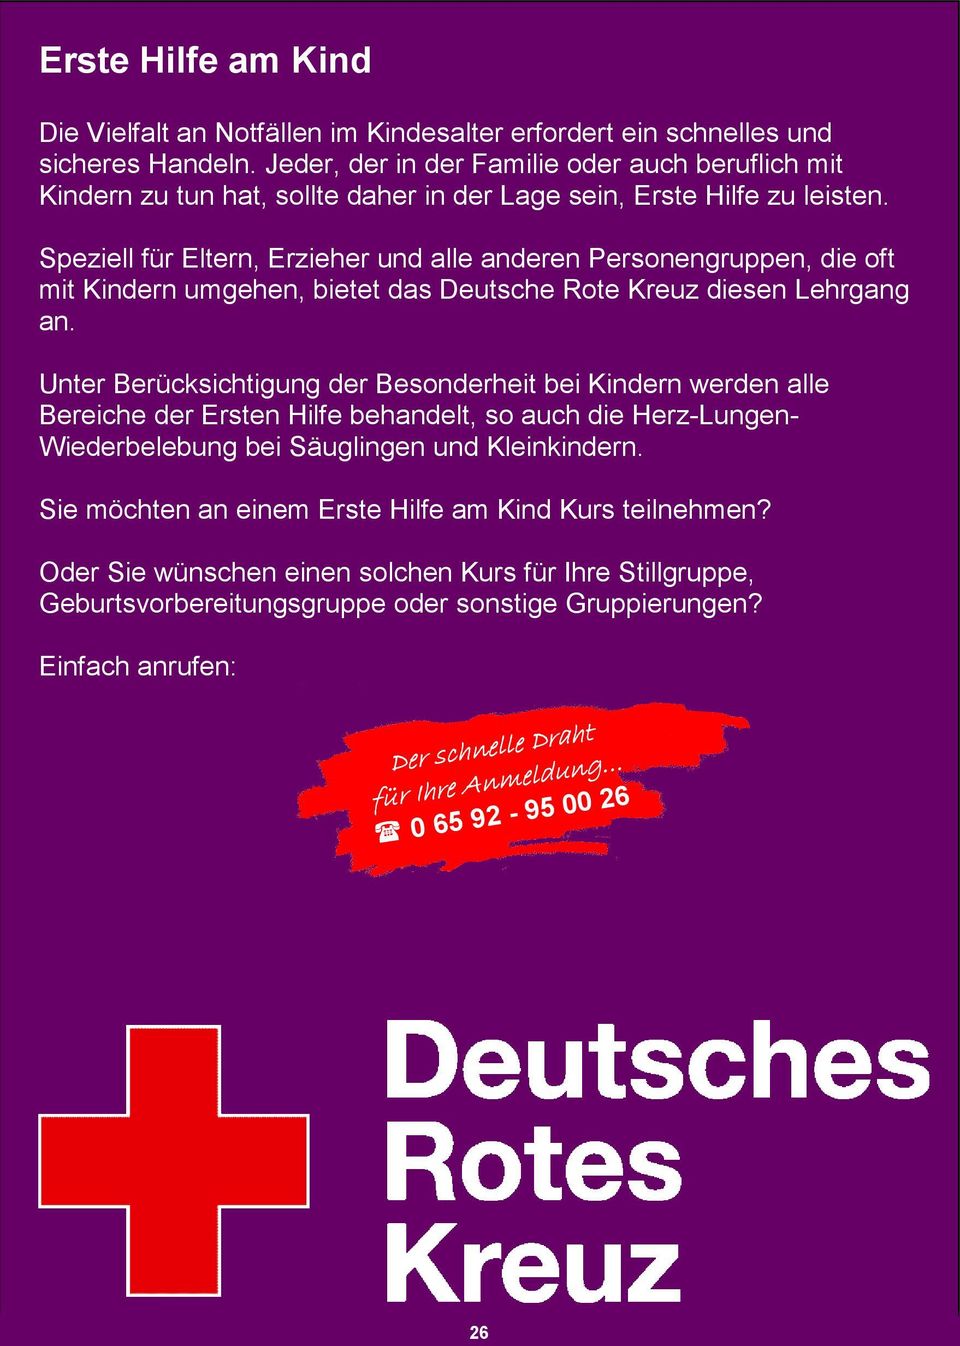 Speziell für Eltern, Erzieher und alle anderen Personengruppen, die oft mit Kindern umgehen, bietet das Deutsche Rote Kreuz diesen Lehrgang an.